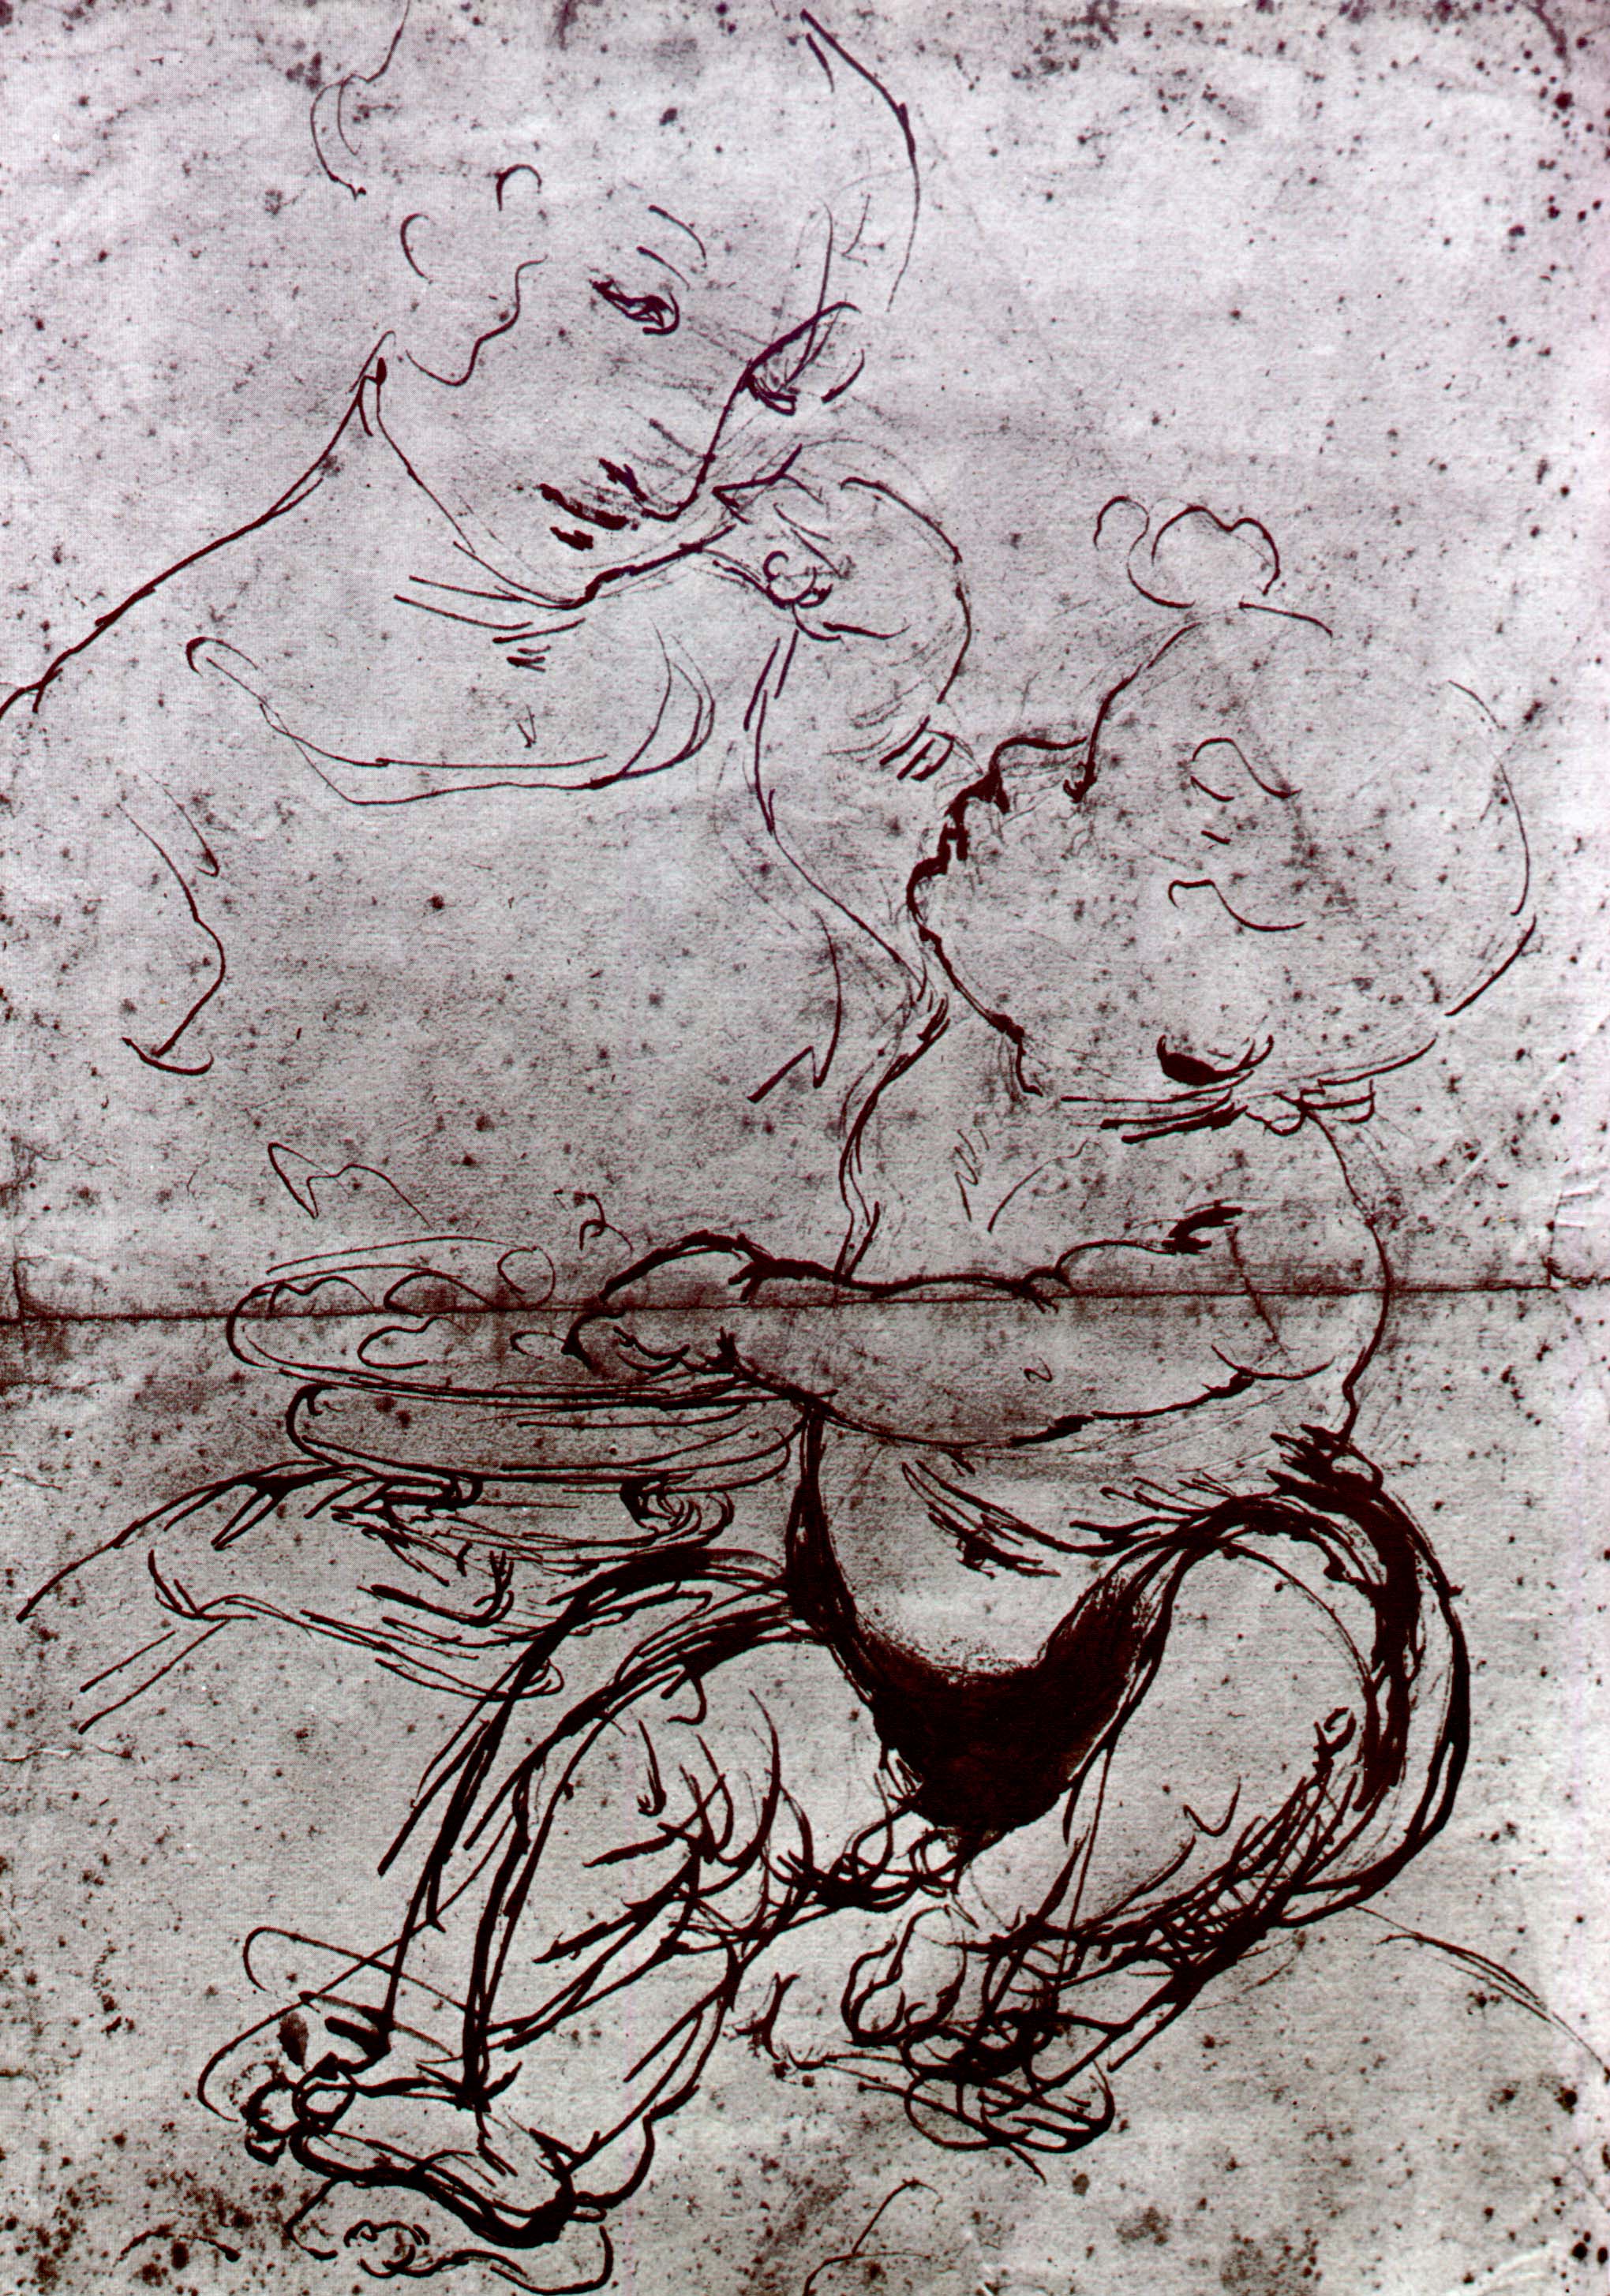 Леонардо да Винчи. "Мадонна с Младенцем и тарелкой фруктов". 1478.